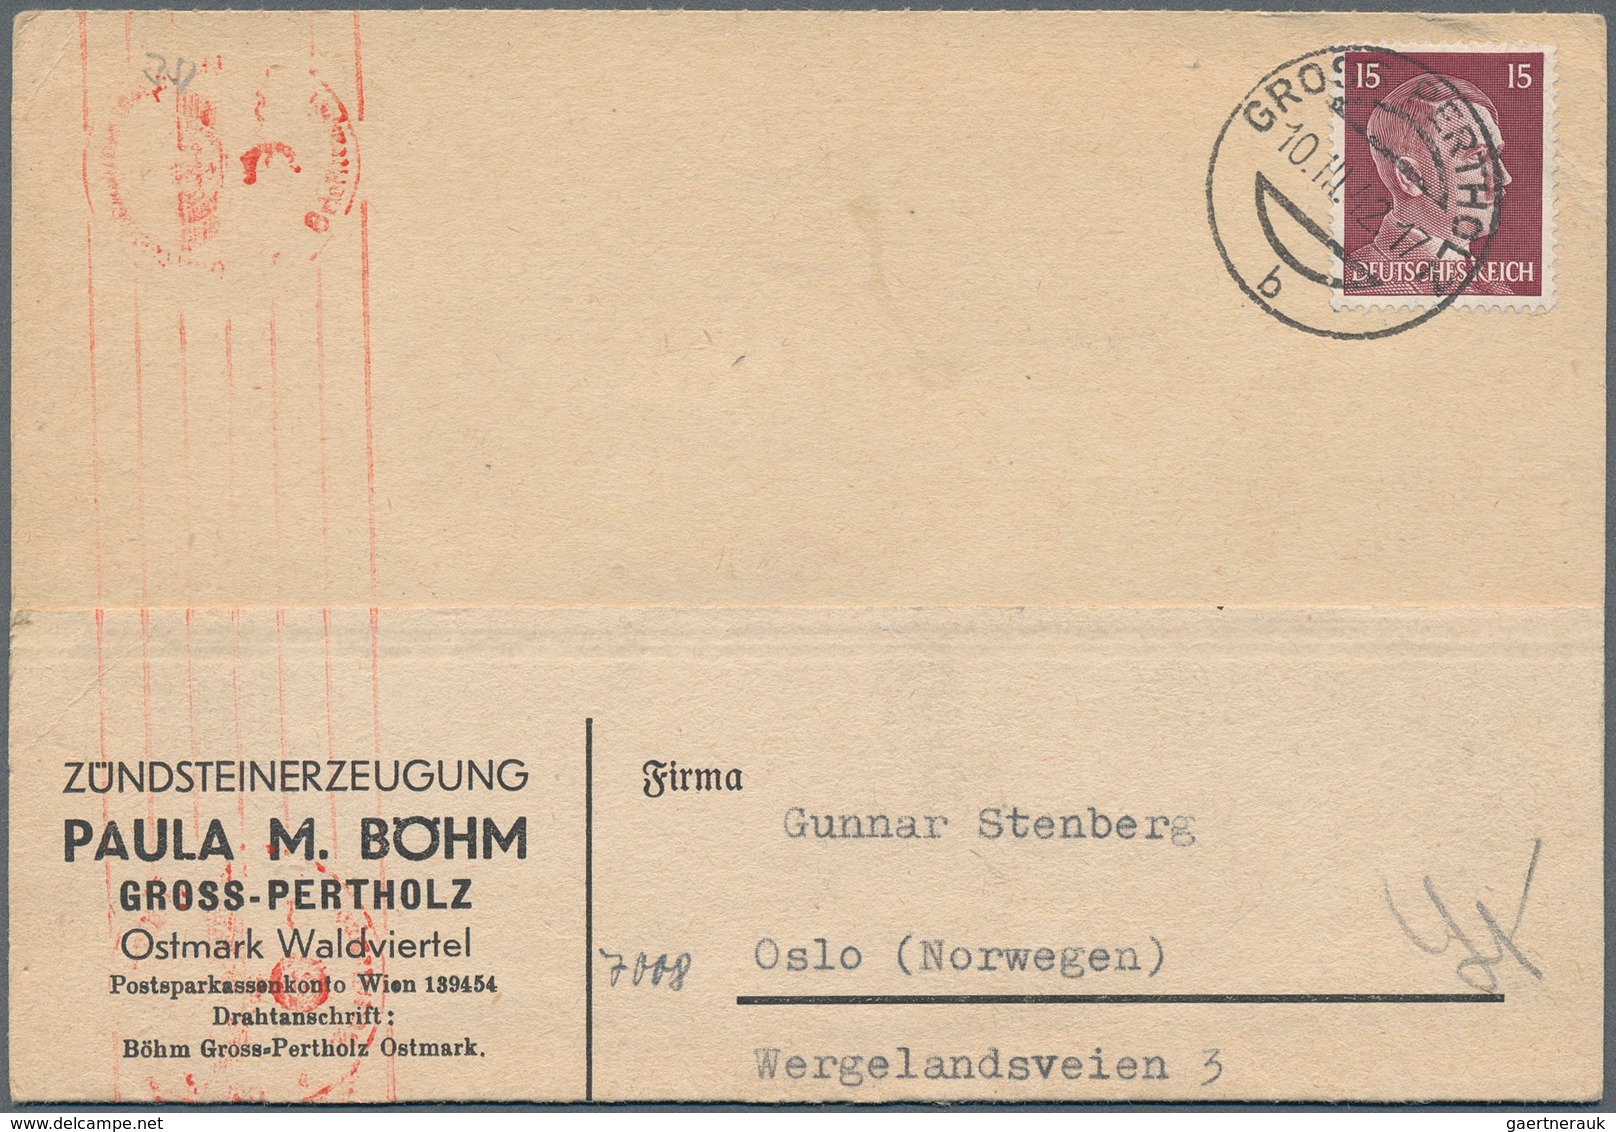 Deutschland: 1850/1980 (ca.), Deutschland/Alle Welt, Posten von einigen hundert Briefen/Karten/Ganzs